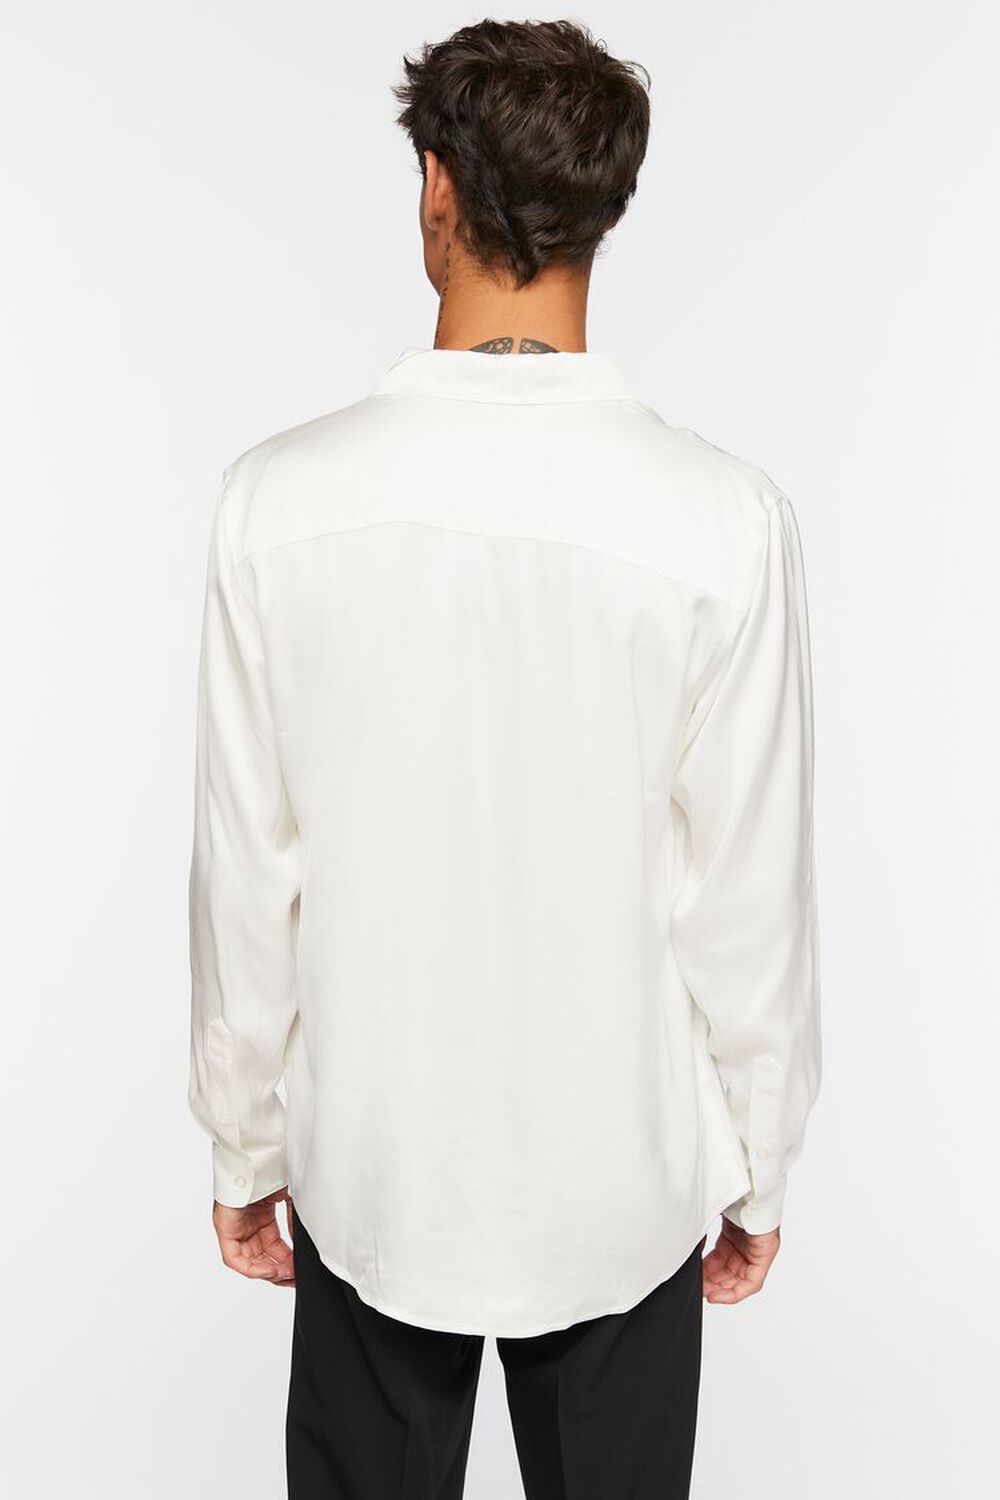 WHITE Satin Long-Sleeve Shirt, image 3